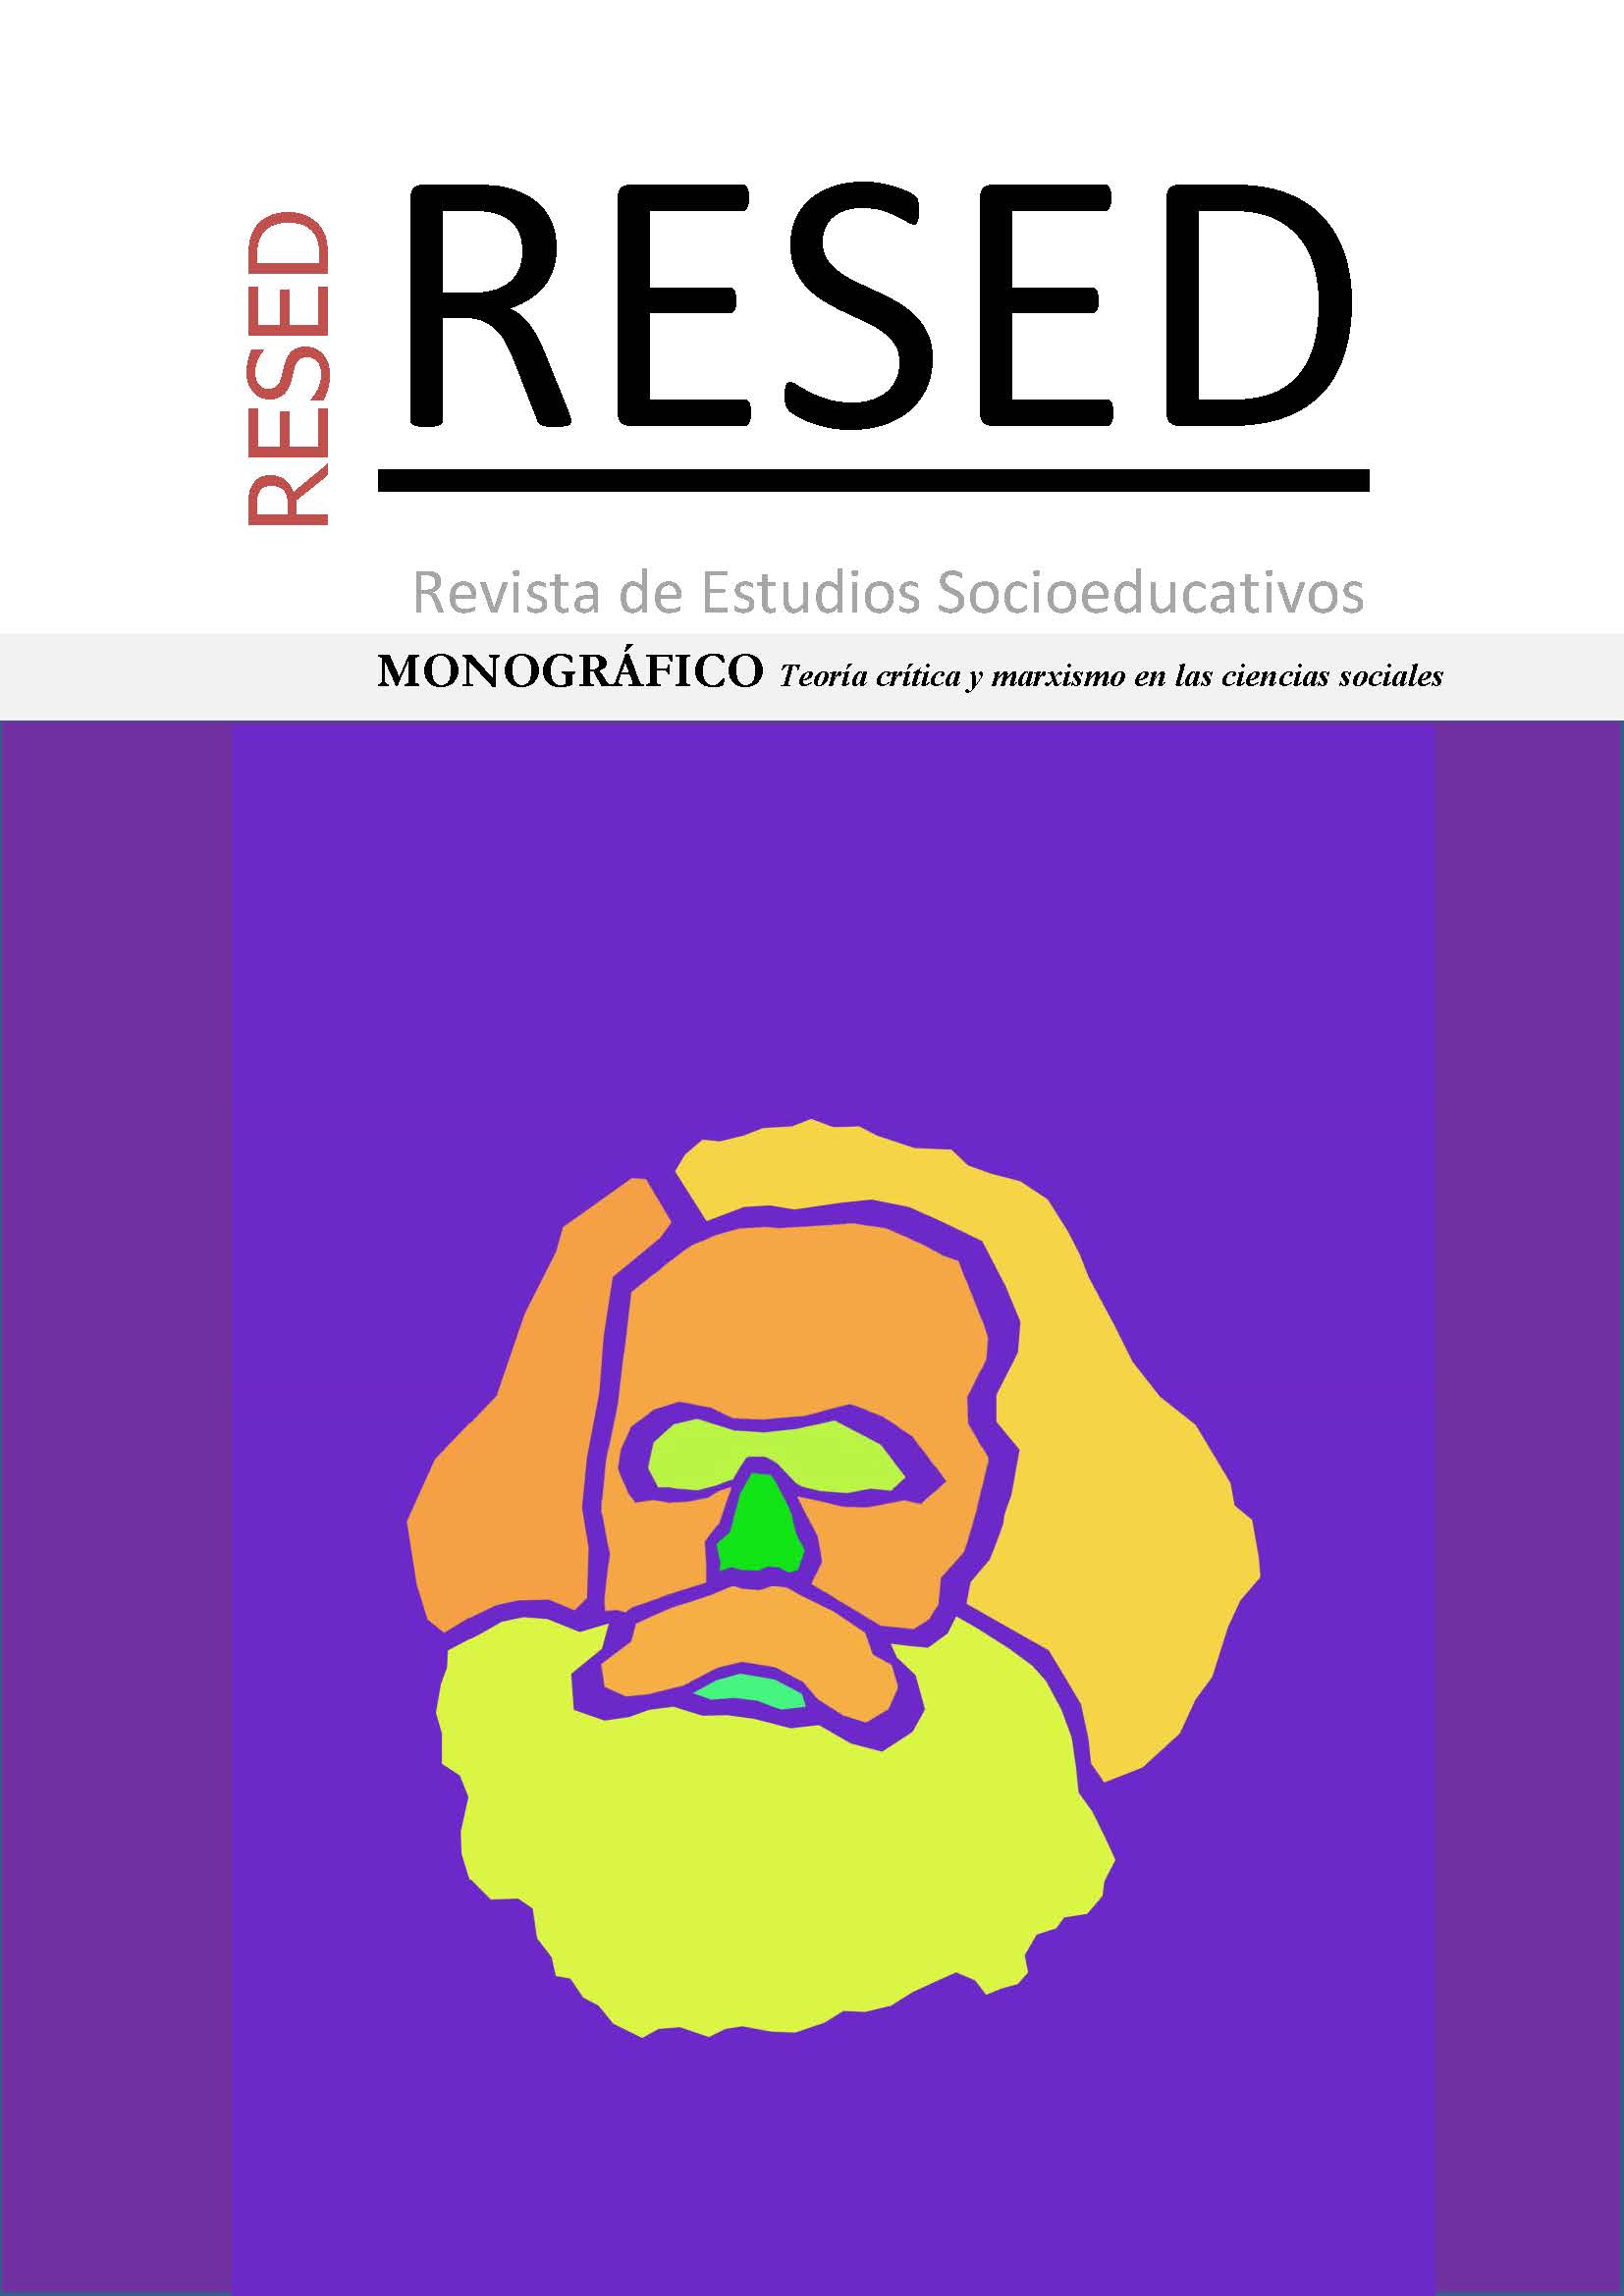 Imagen minimalista y simbólica de Marx (diseño de Javier Montero)